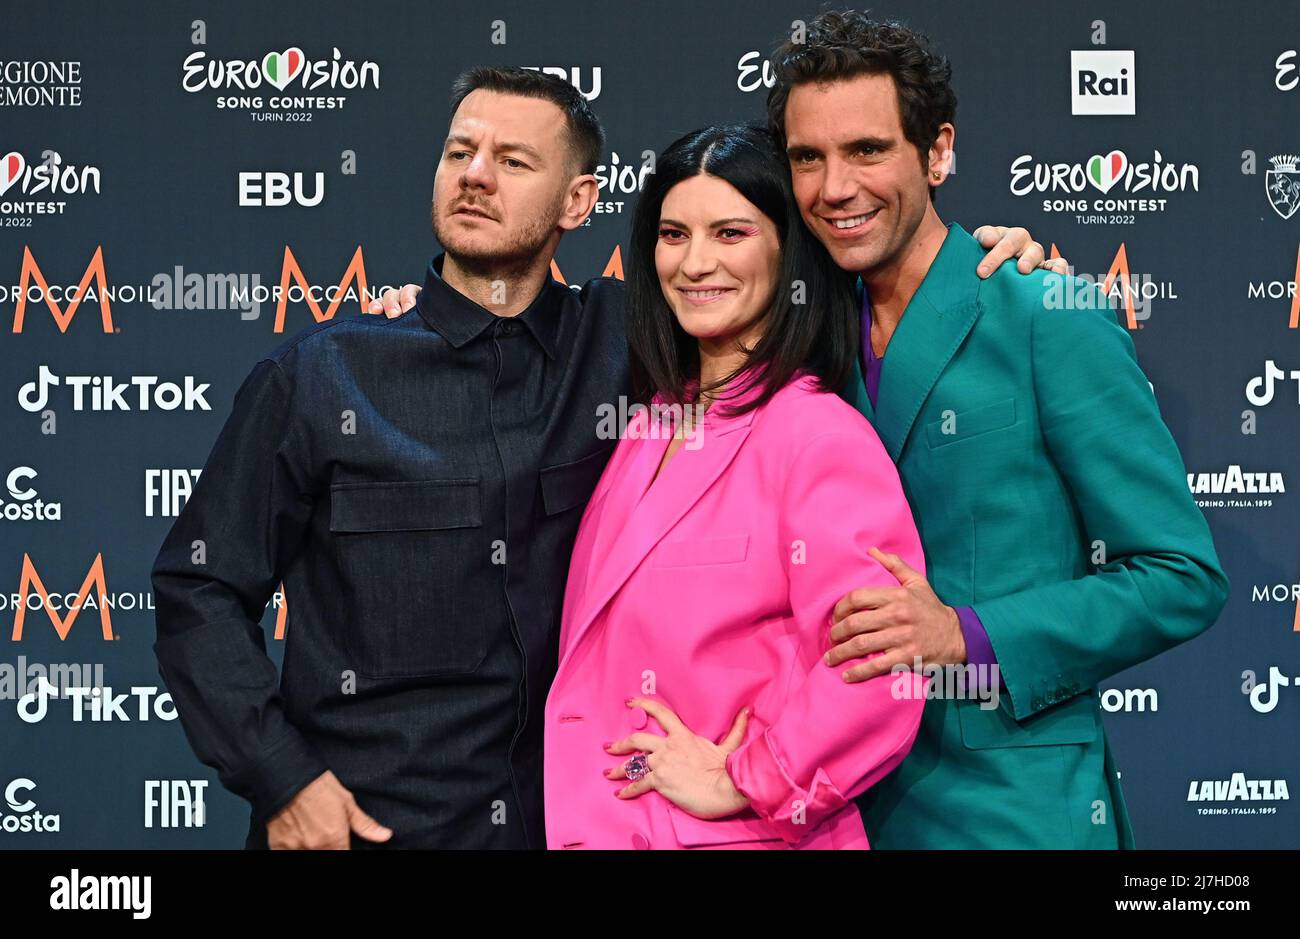 9 de mayo de 2022, TURÍN, Italia: Los directores del Festival de la Canción  de Eurovisión 2022 El presentador de radio y televisión italiano Alessandro  Cattelan (S), la cantante italiana Laura Pausini